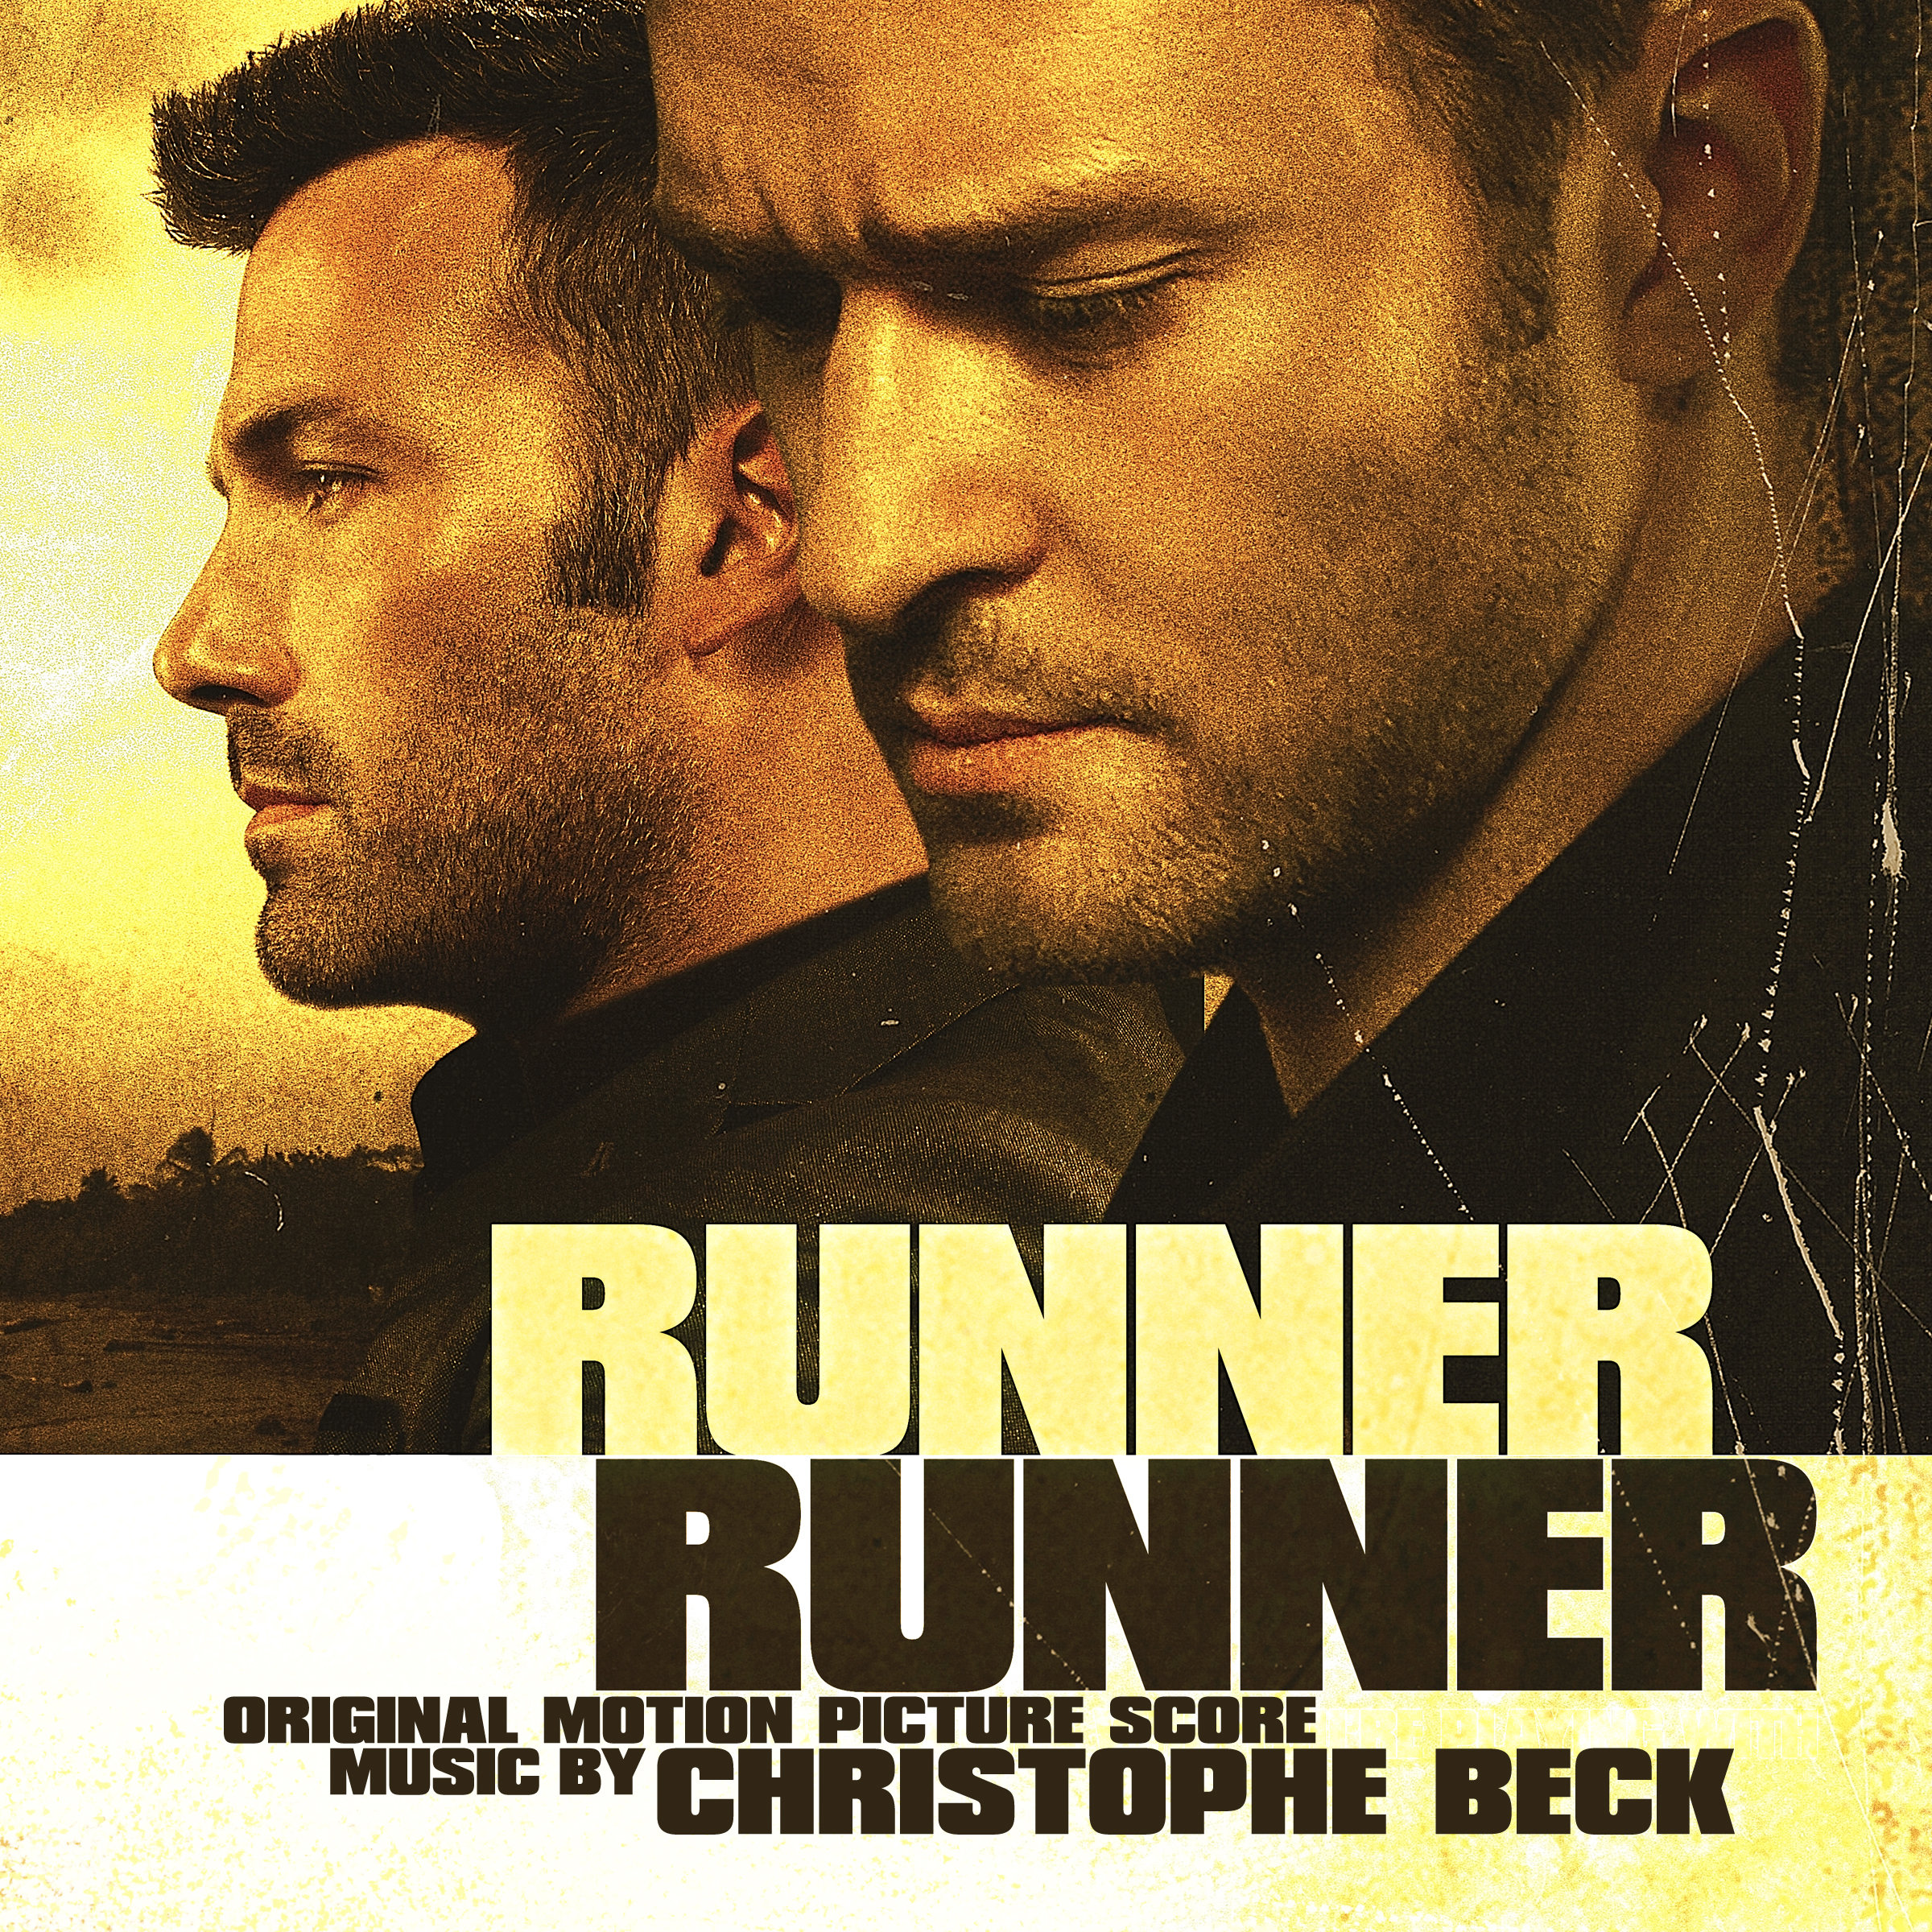 Runner soundtrack